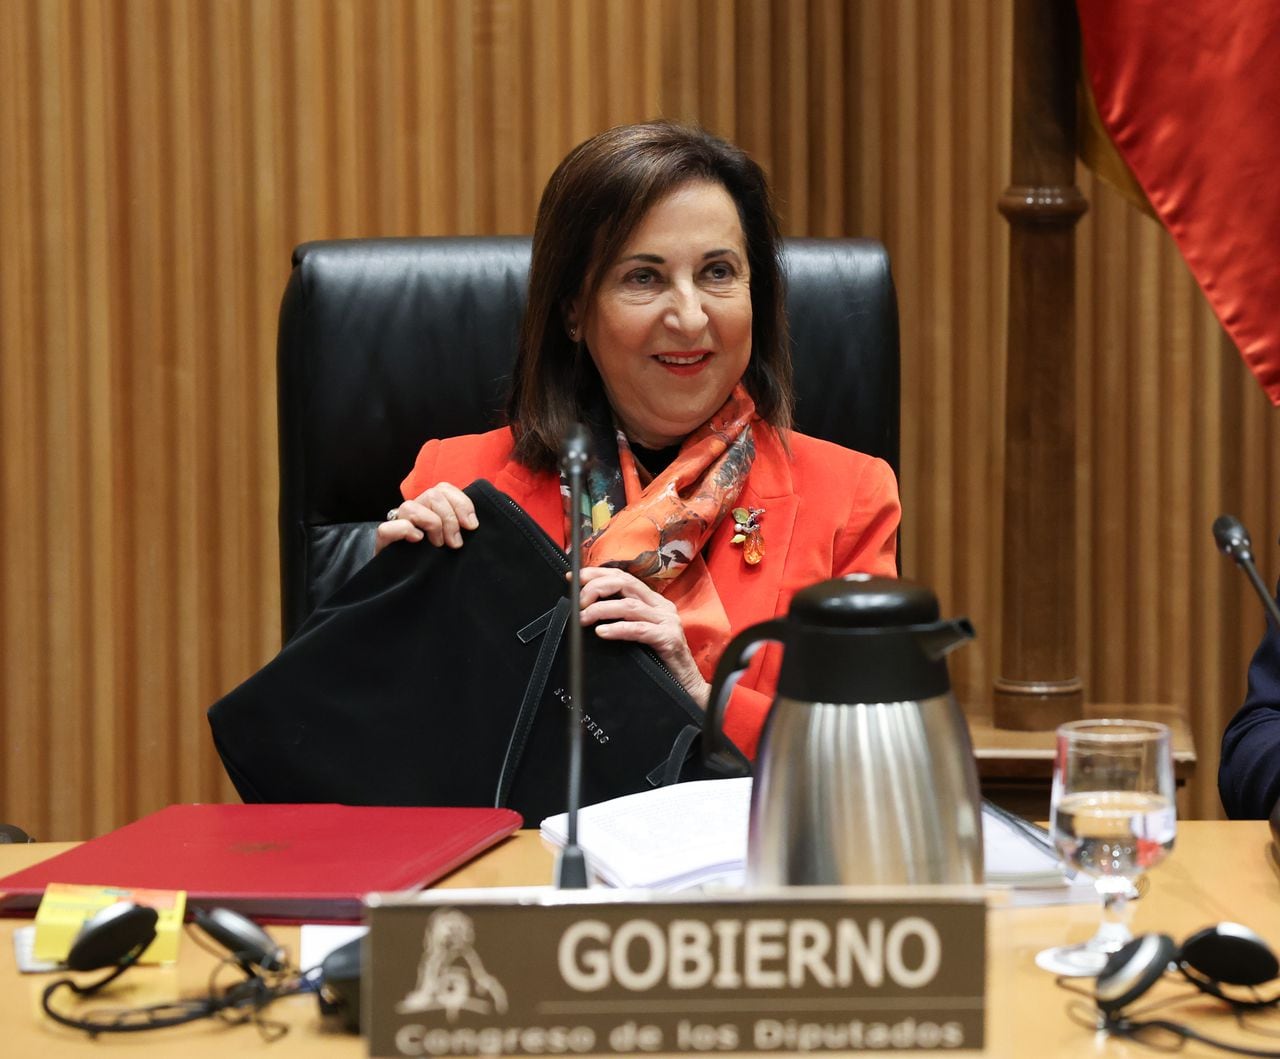 La Ministra de Defensa, Margarita Robles, durante la Comisión de Defensa del Congreso de los Diputados, el 25 de enero de 2024 en Madrid, España. Durante la comparecencia informó sobre las líneas generales de la política de su departamento.